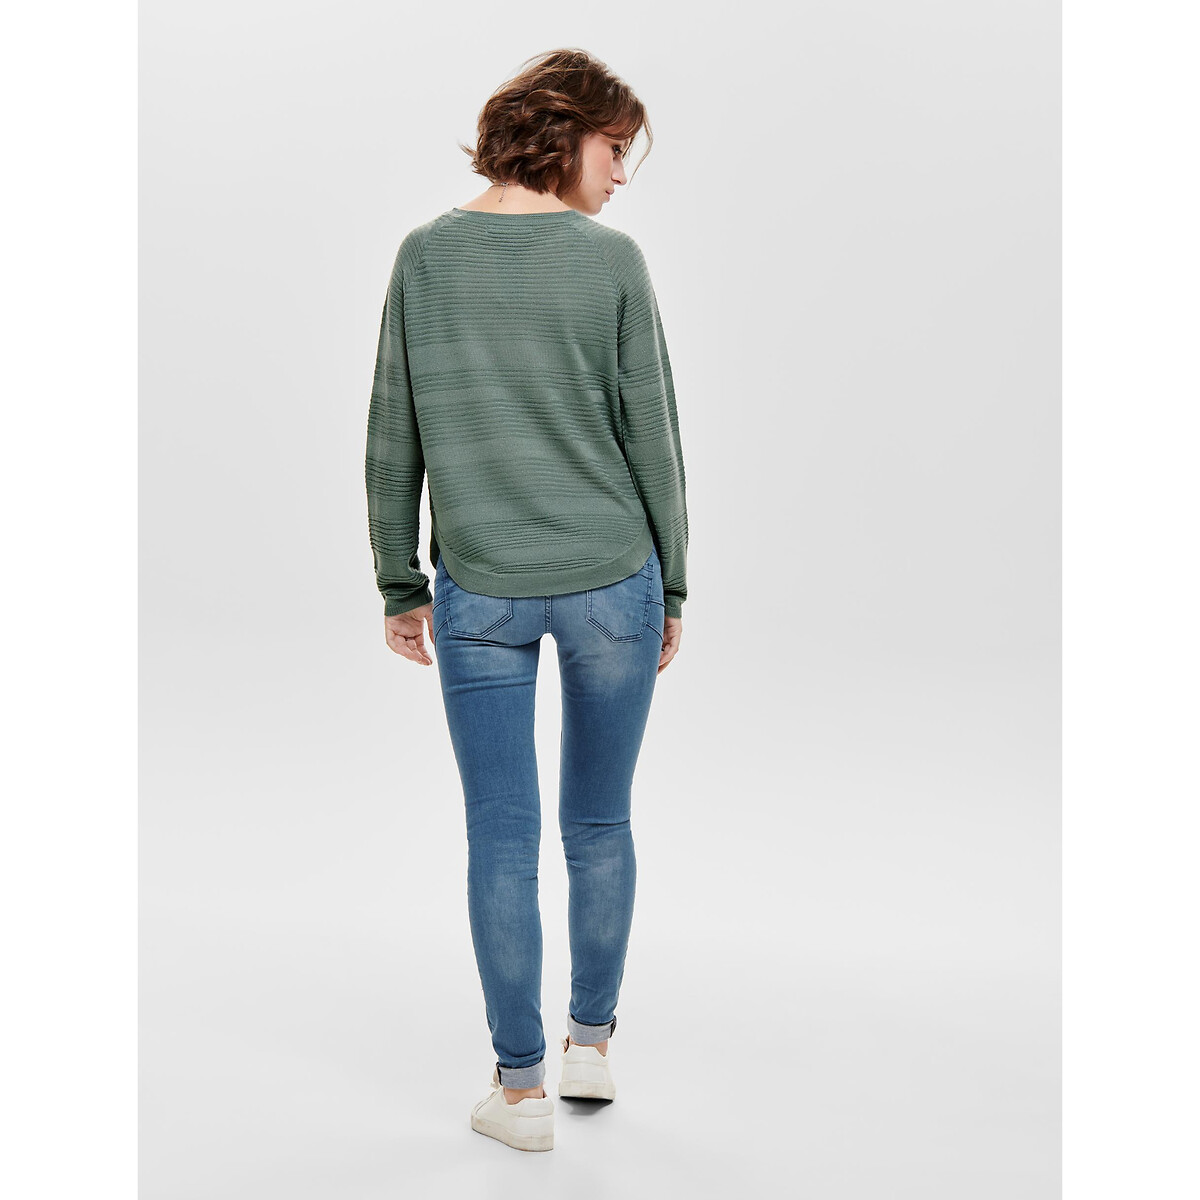 Пуловер Из тонкого трикотажа присборенный снизу S зеленый LaRedoute, размер S - фото 5